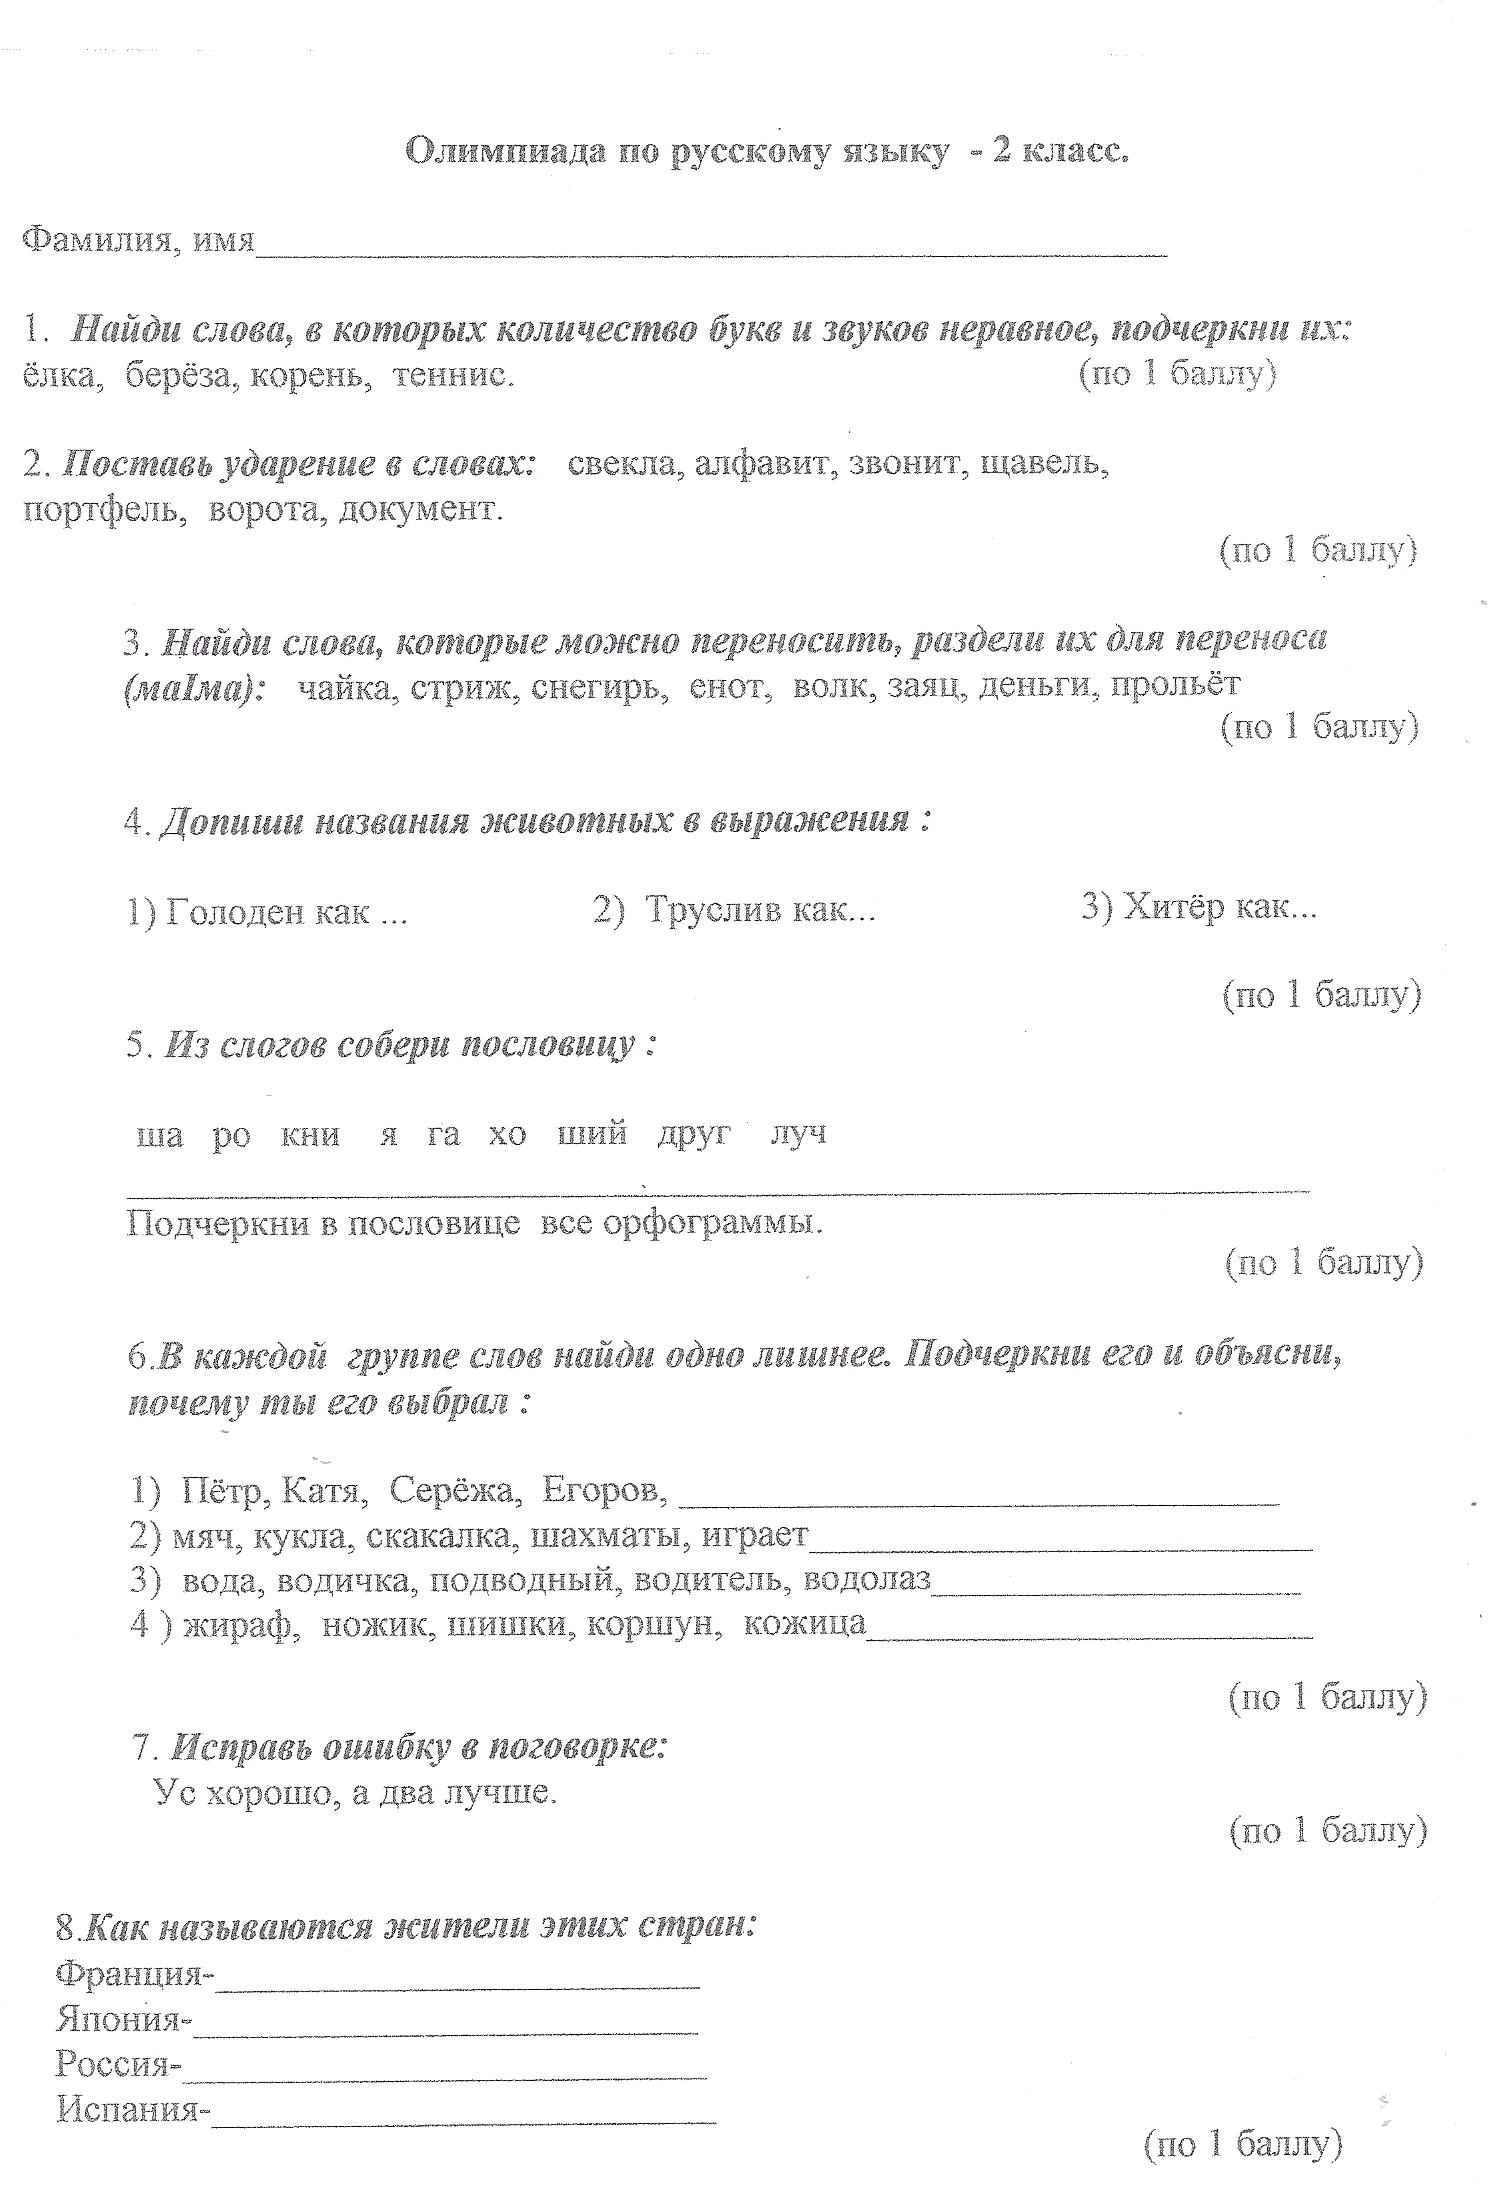 Олимпиада по русскому языку для 3 класса